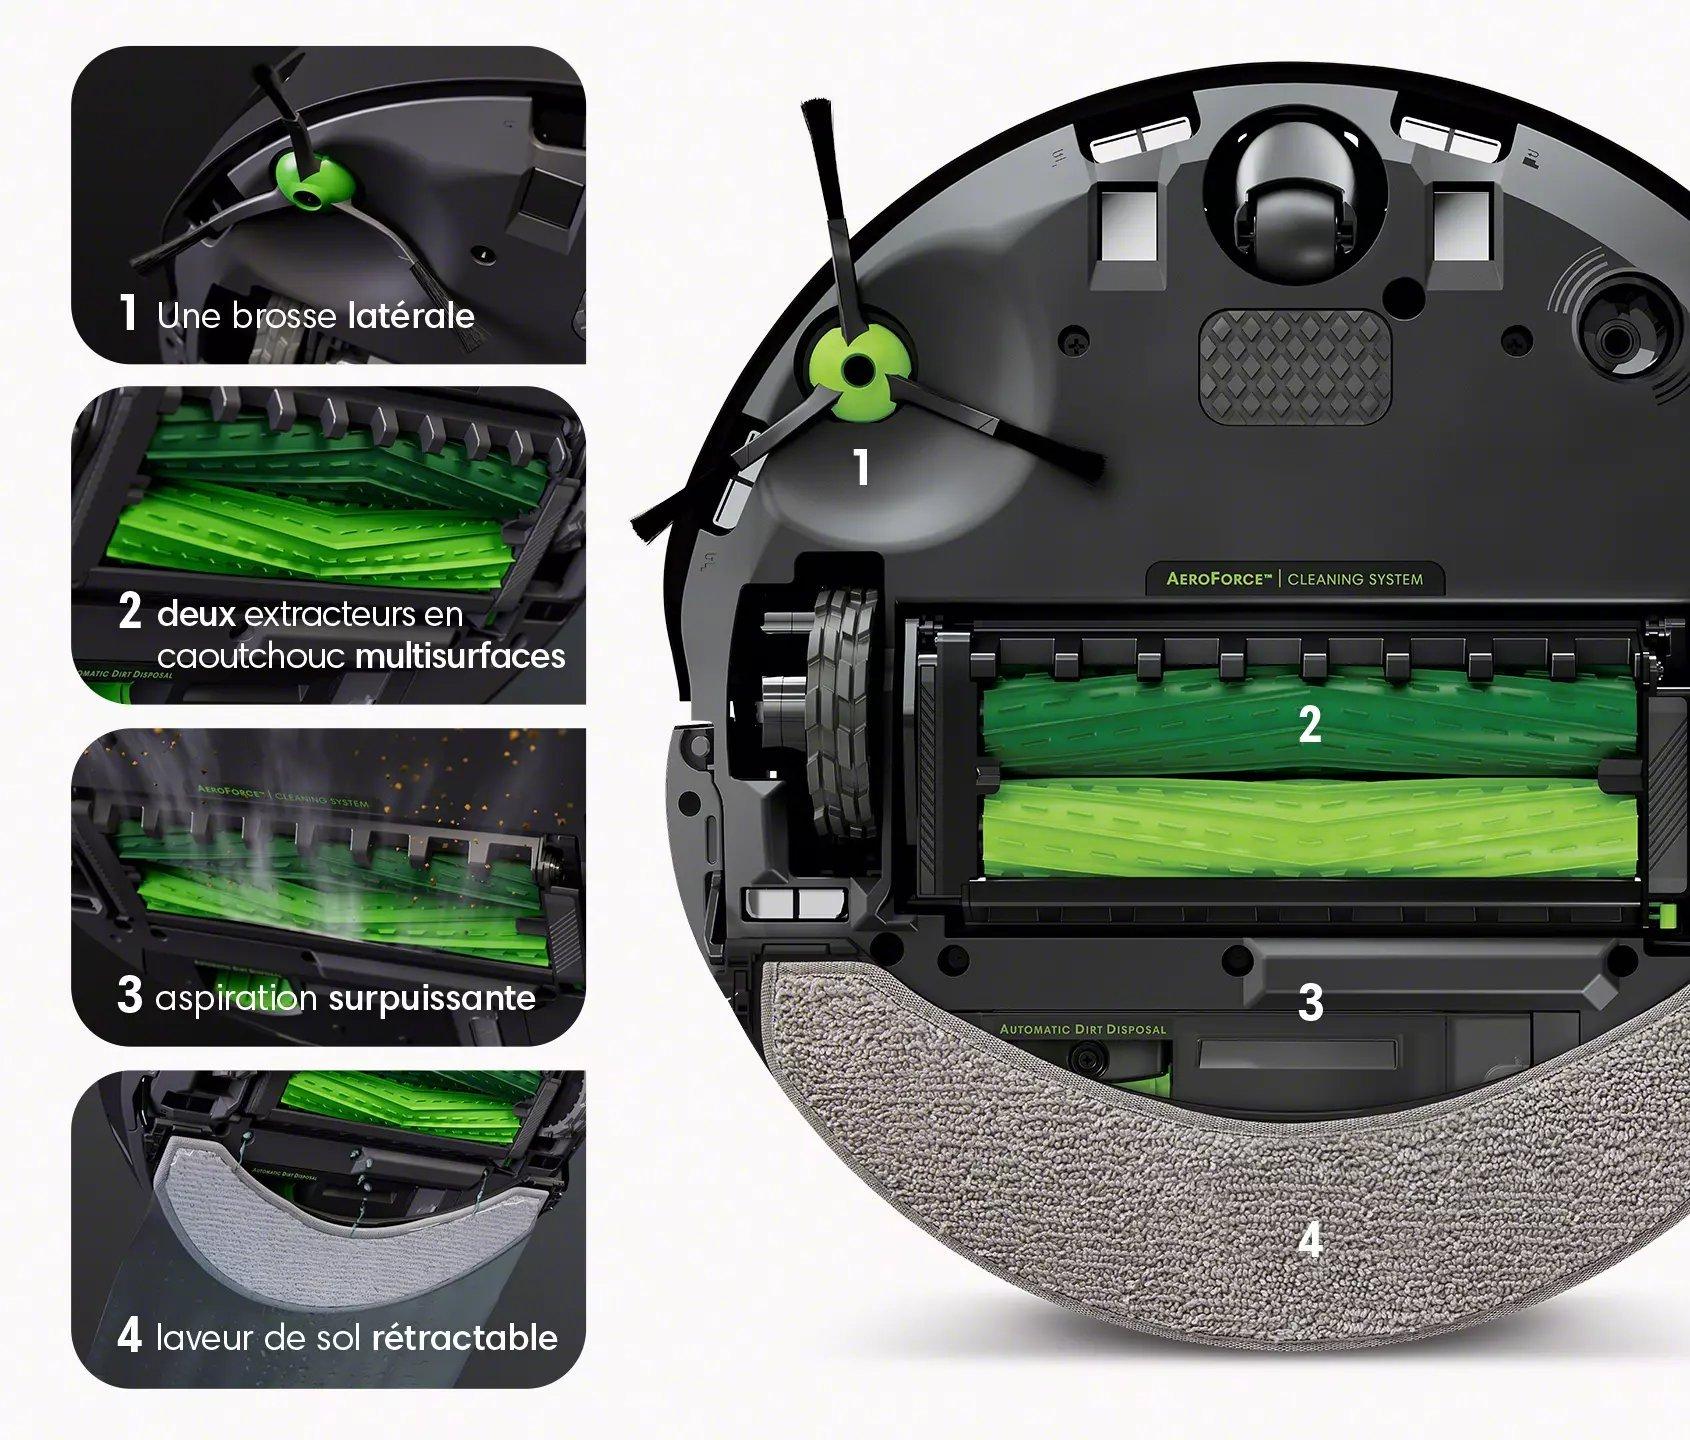 Roomba Combo™ i8, Aspirateur robot et laveur de sols